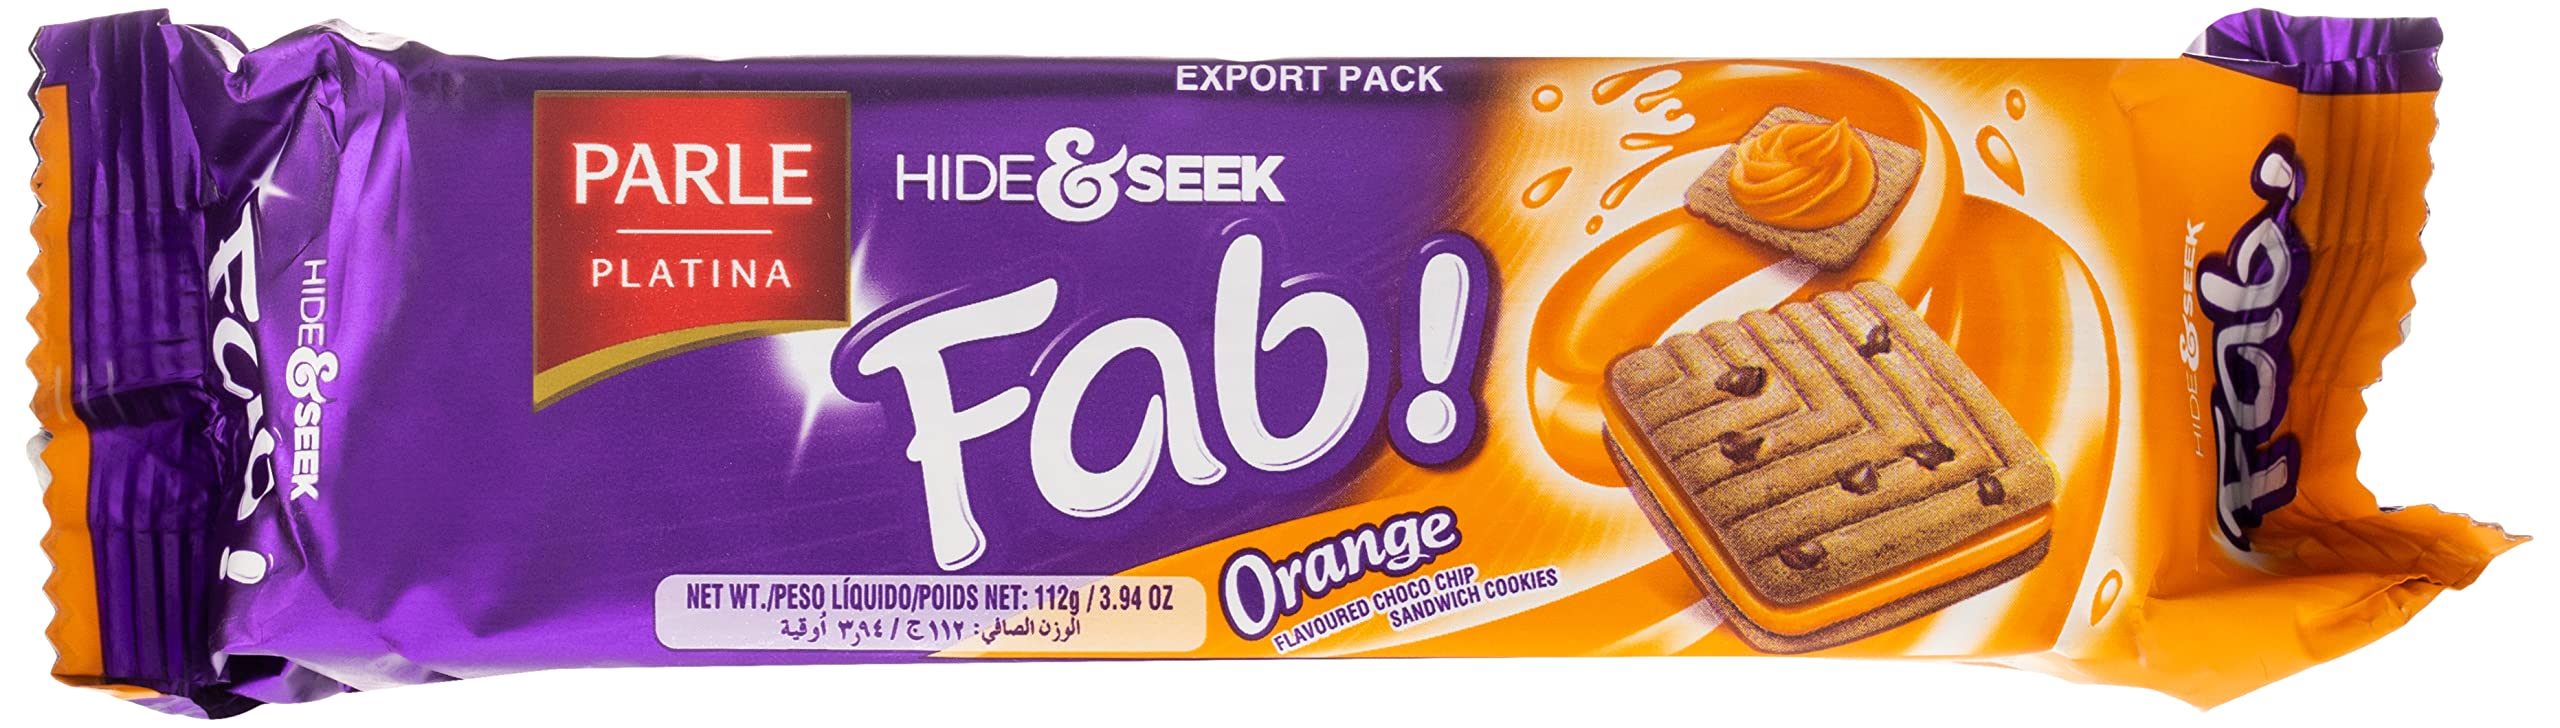 Parle - Hide & Seek - Fab Orange